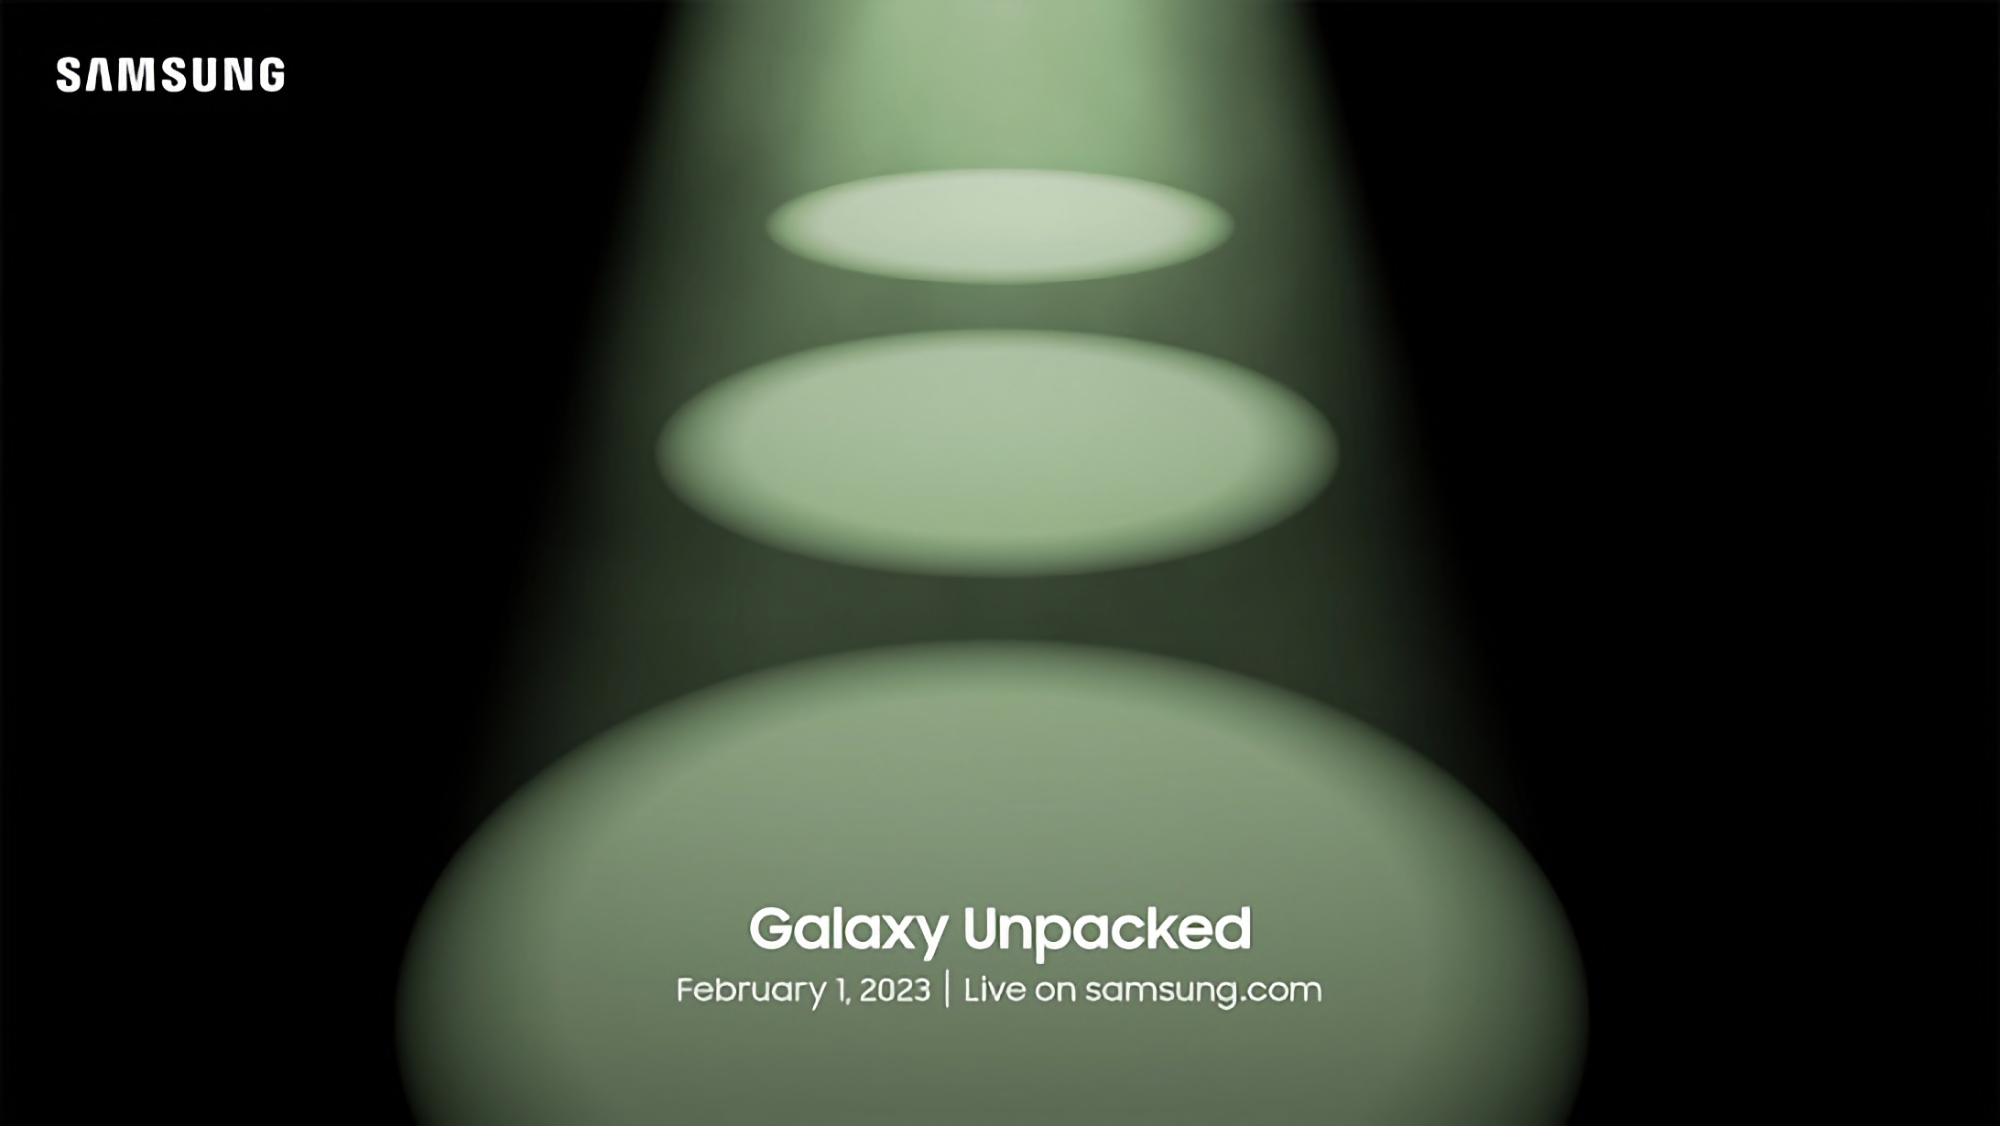 Тепер офіційно: Samsung покаже флагмани Galaxy S23 на презентації Galaxy Unpacked 1 лютого